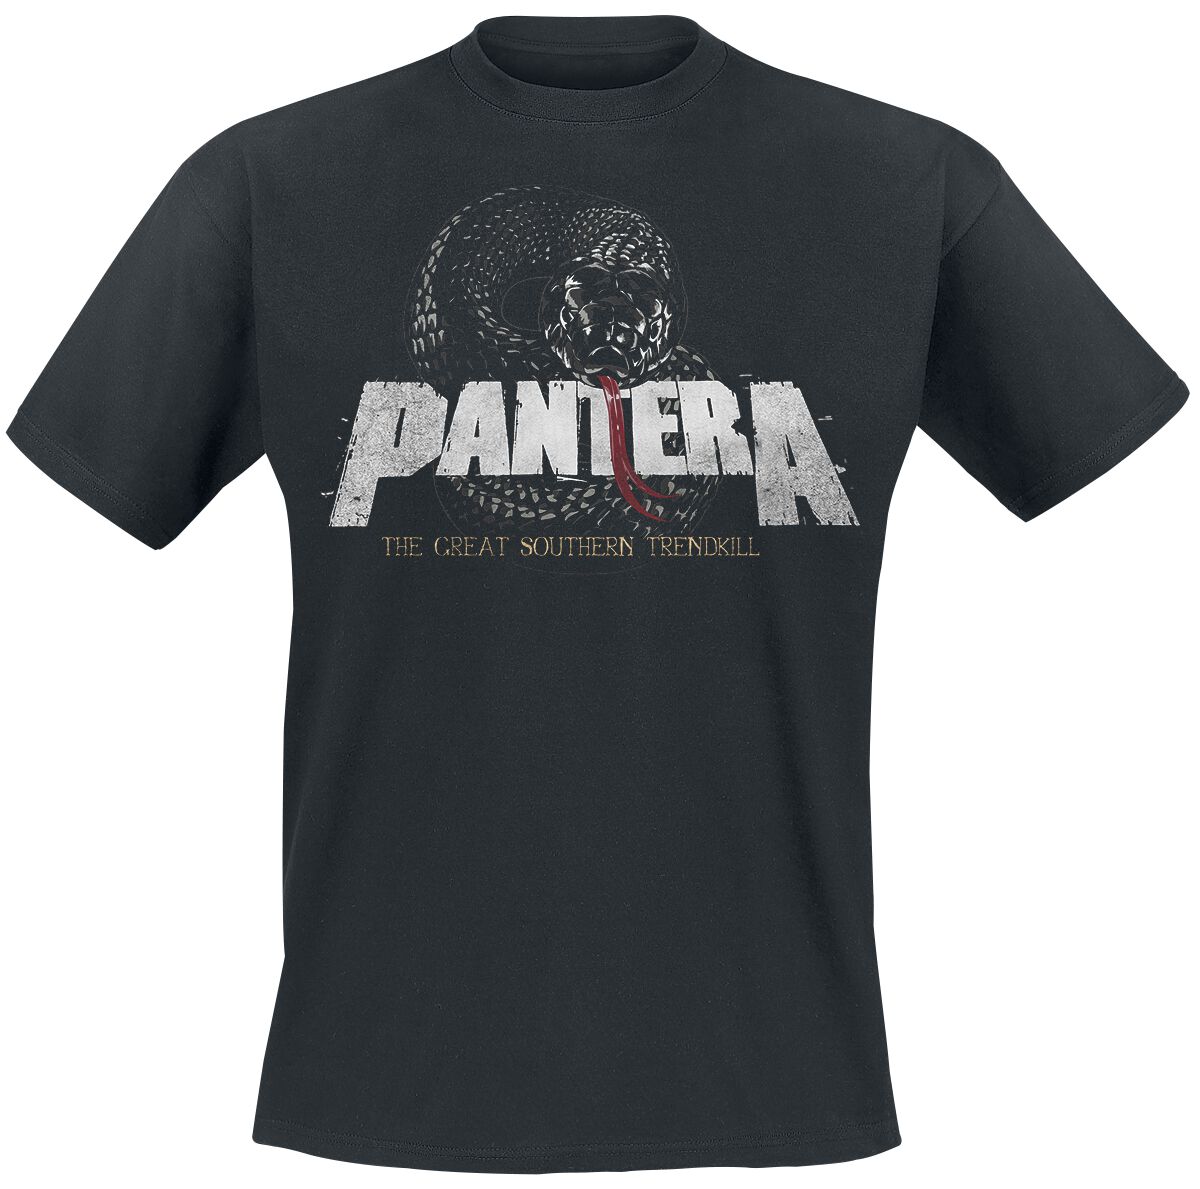 Pantera T-Shirt - Trendkill Snake - S bis 3XL - für Männer - Größe S - schwarz  - Lizenziertes Merchandise!